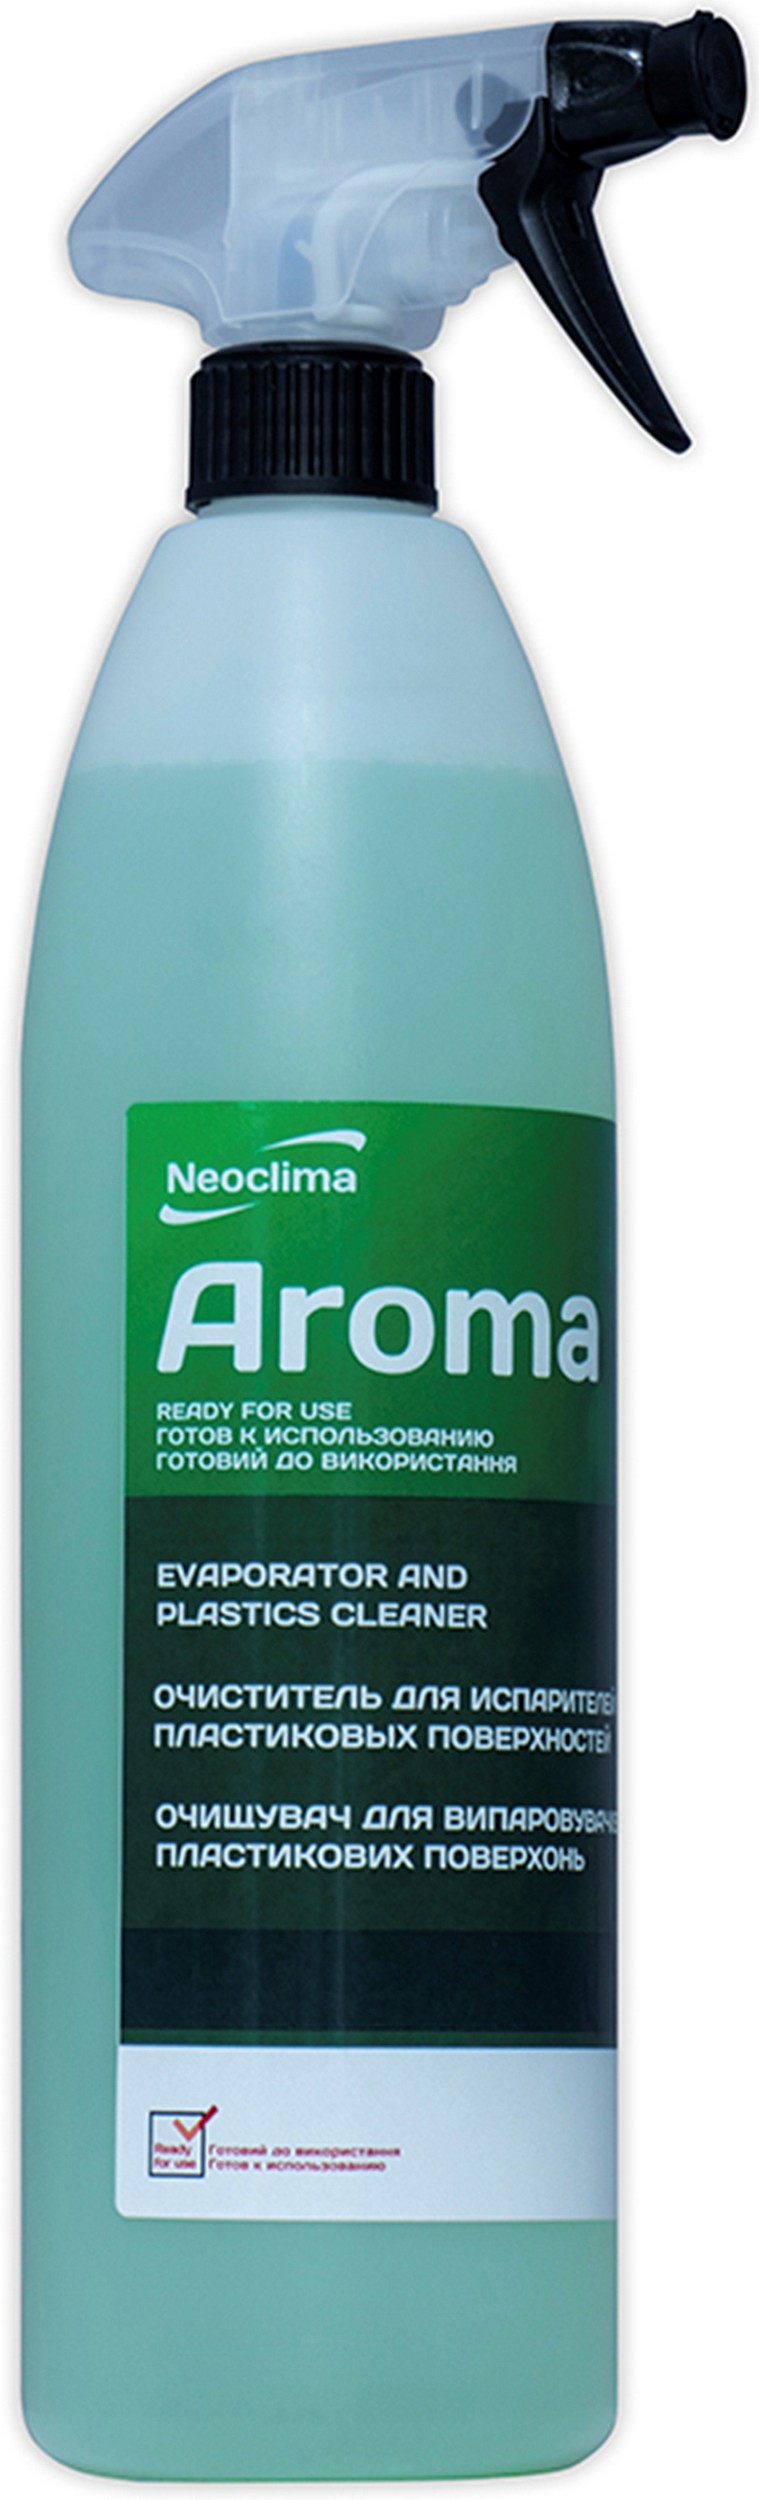 Купить очиститель для кондиционеров Neoclima Aroma 1 л, спрей в Киеве